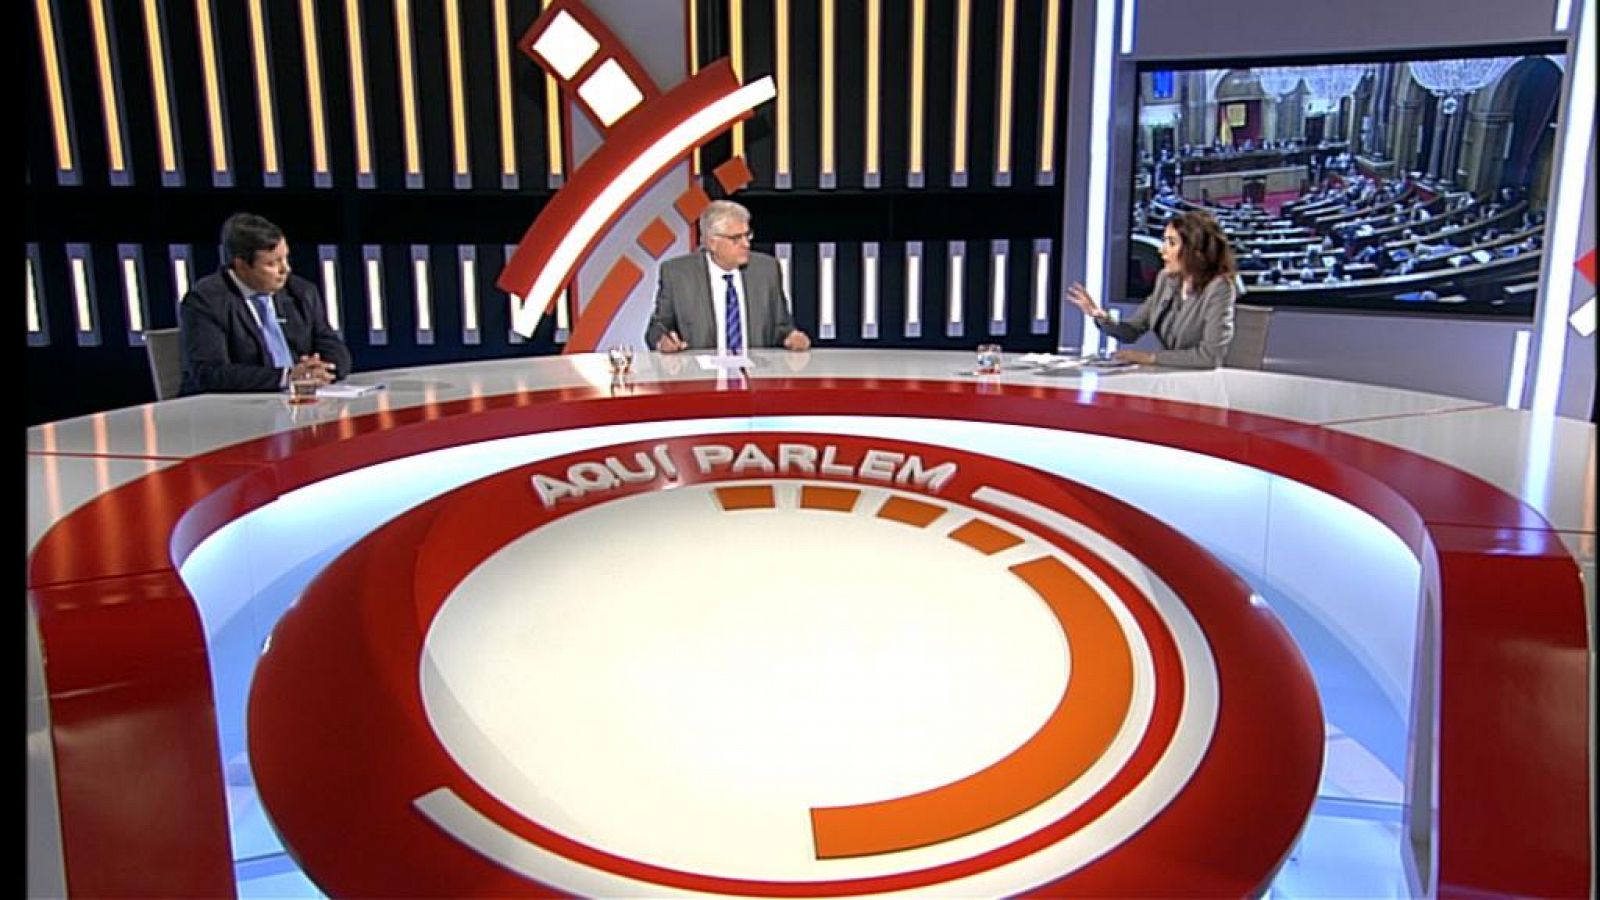 Aquí parlem: 400 programes analitzant l'actualitat catalana | RTVE Play